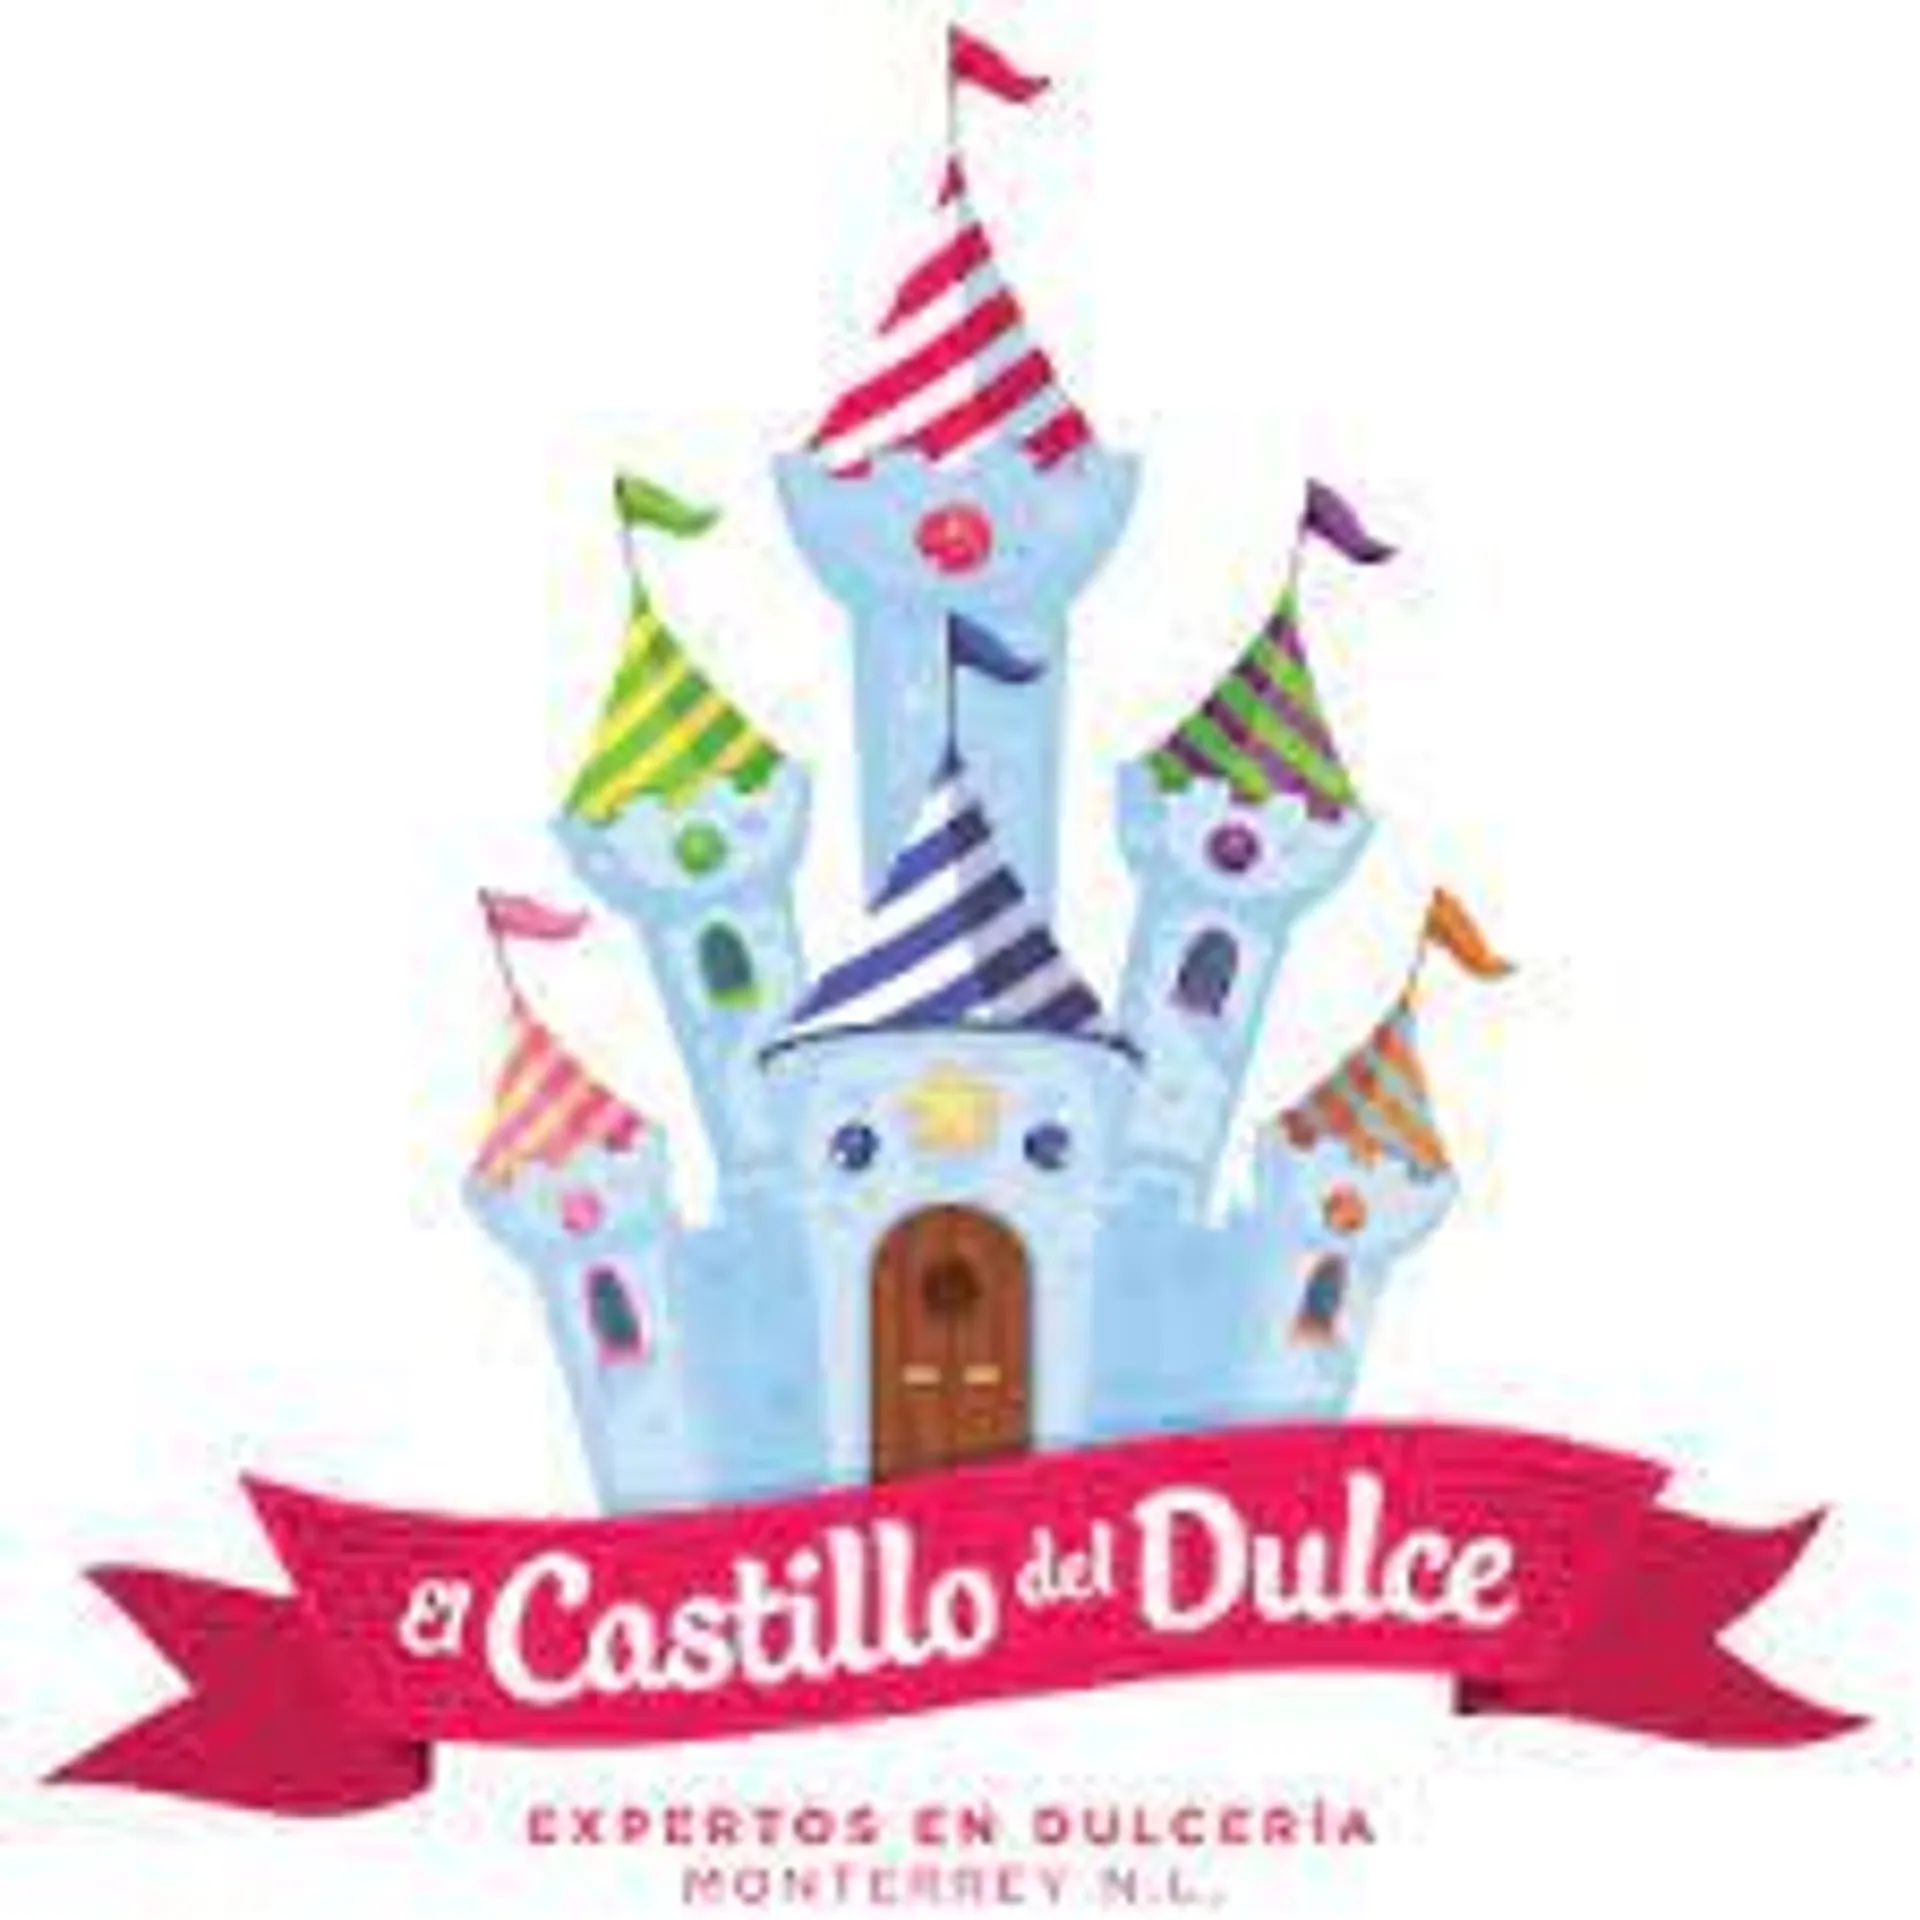 EL CASTILLO DEL DULCE logo